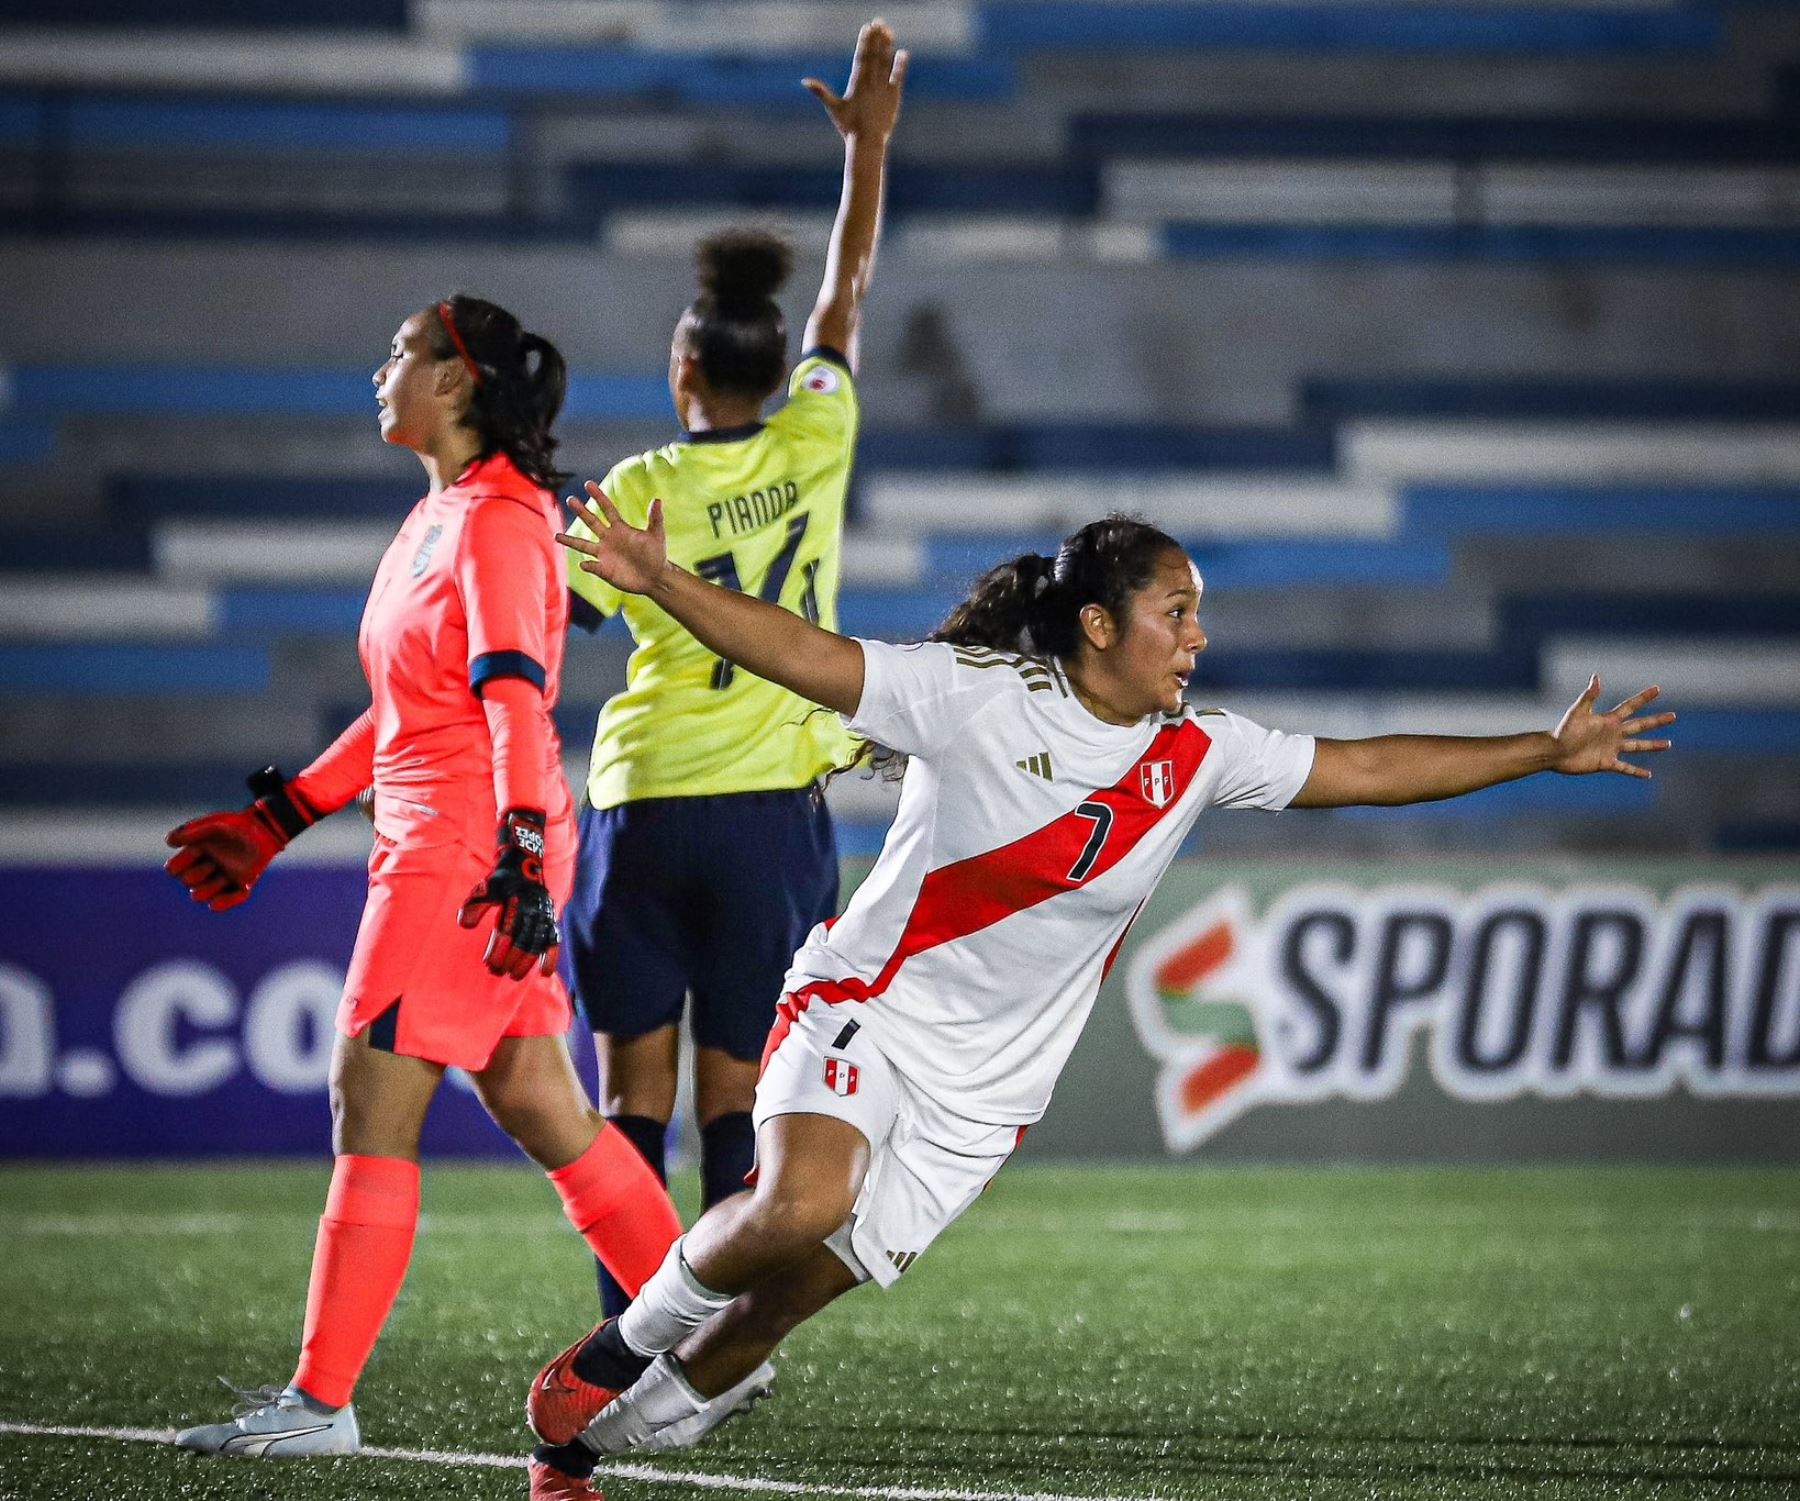 Selección peruana femanina sub-20 luchan por clasificar